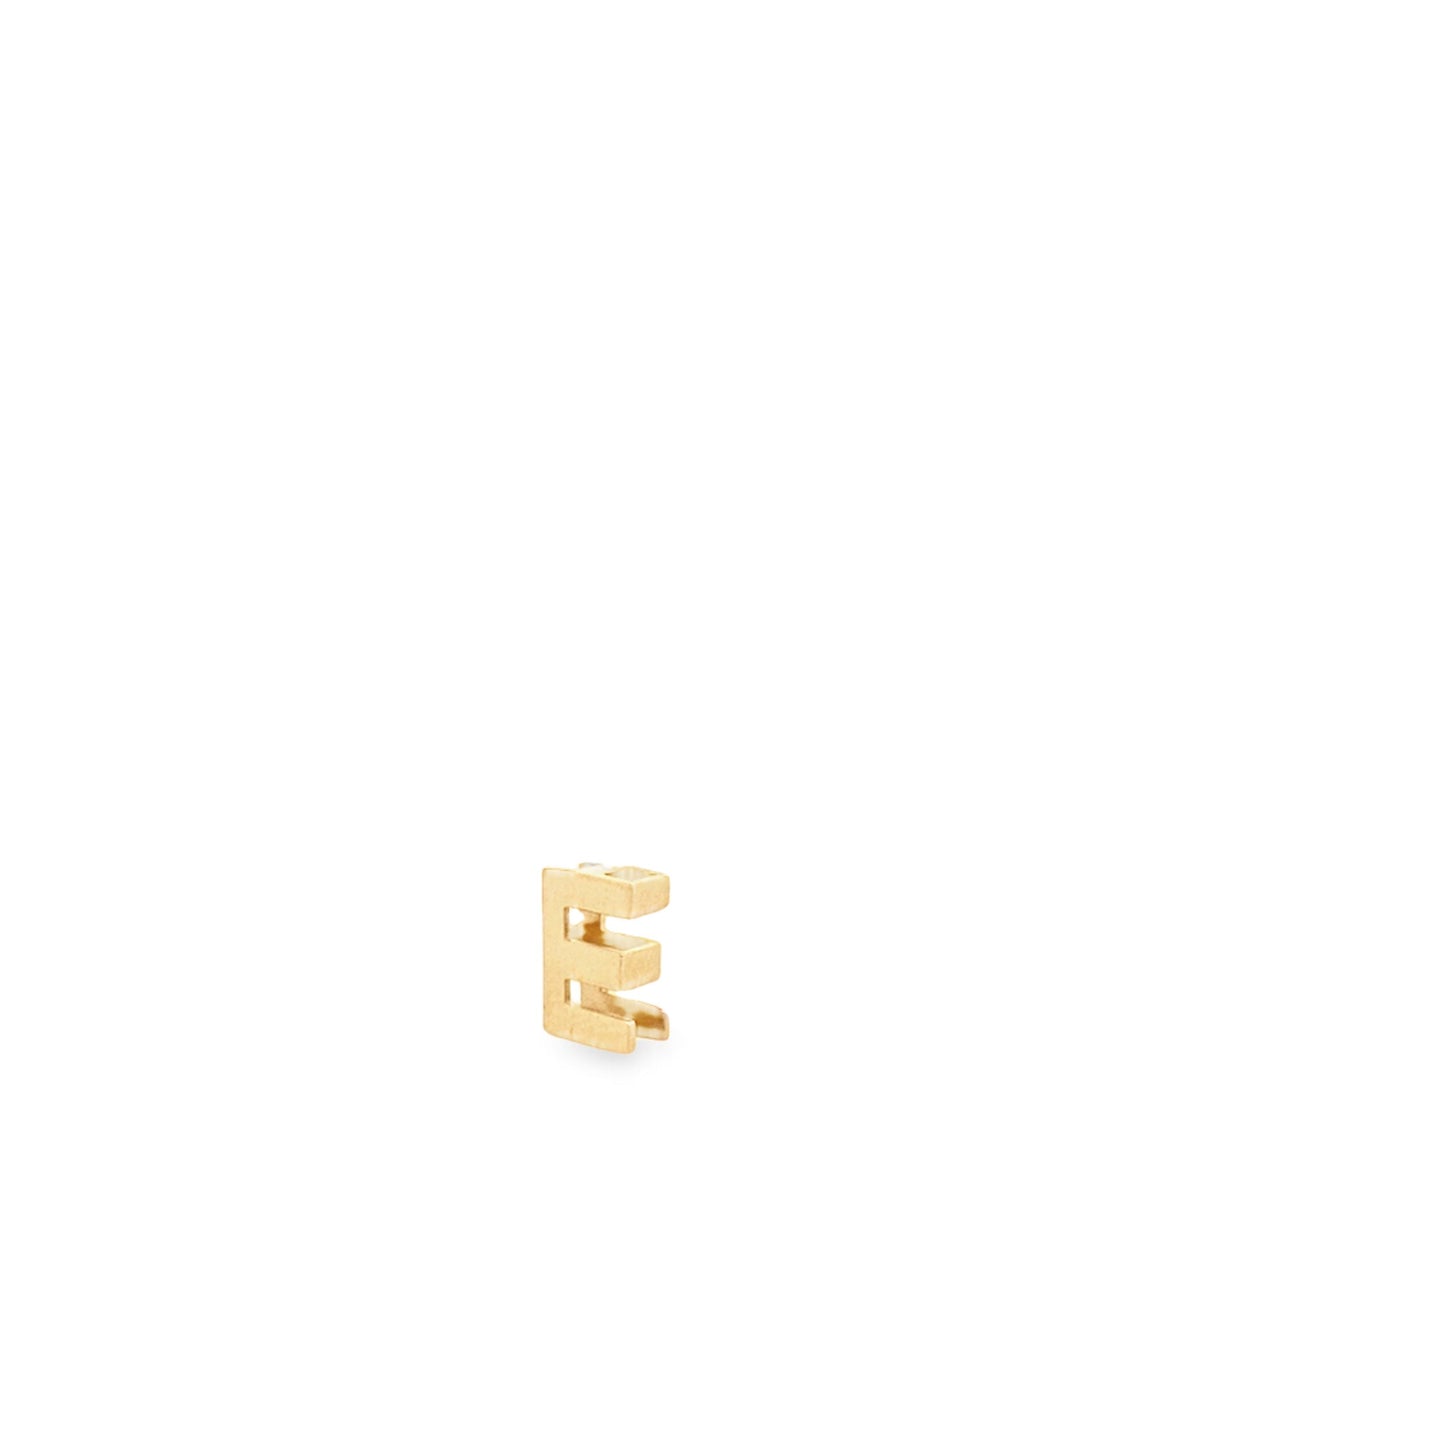 14K Yellow Gold Slider Initial "E" Pendant 0.4Dwt